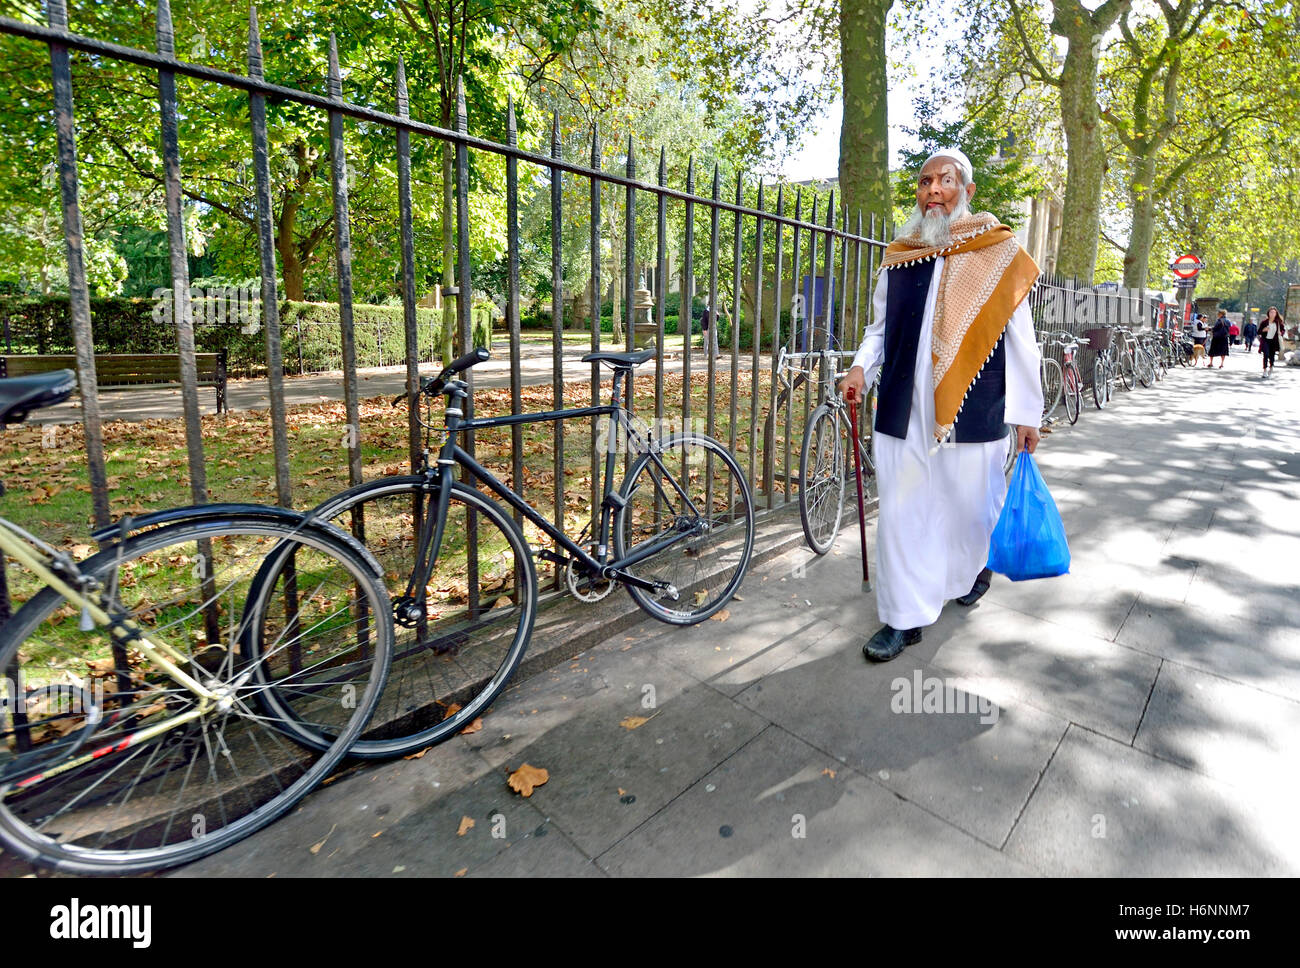 Londra, Inghilterra, Regno Unito. Anziani uomo musulmano a piedi nella Whitechapel Foto Stock